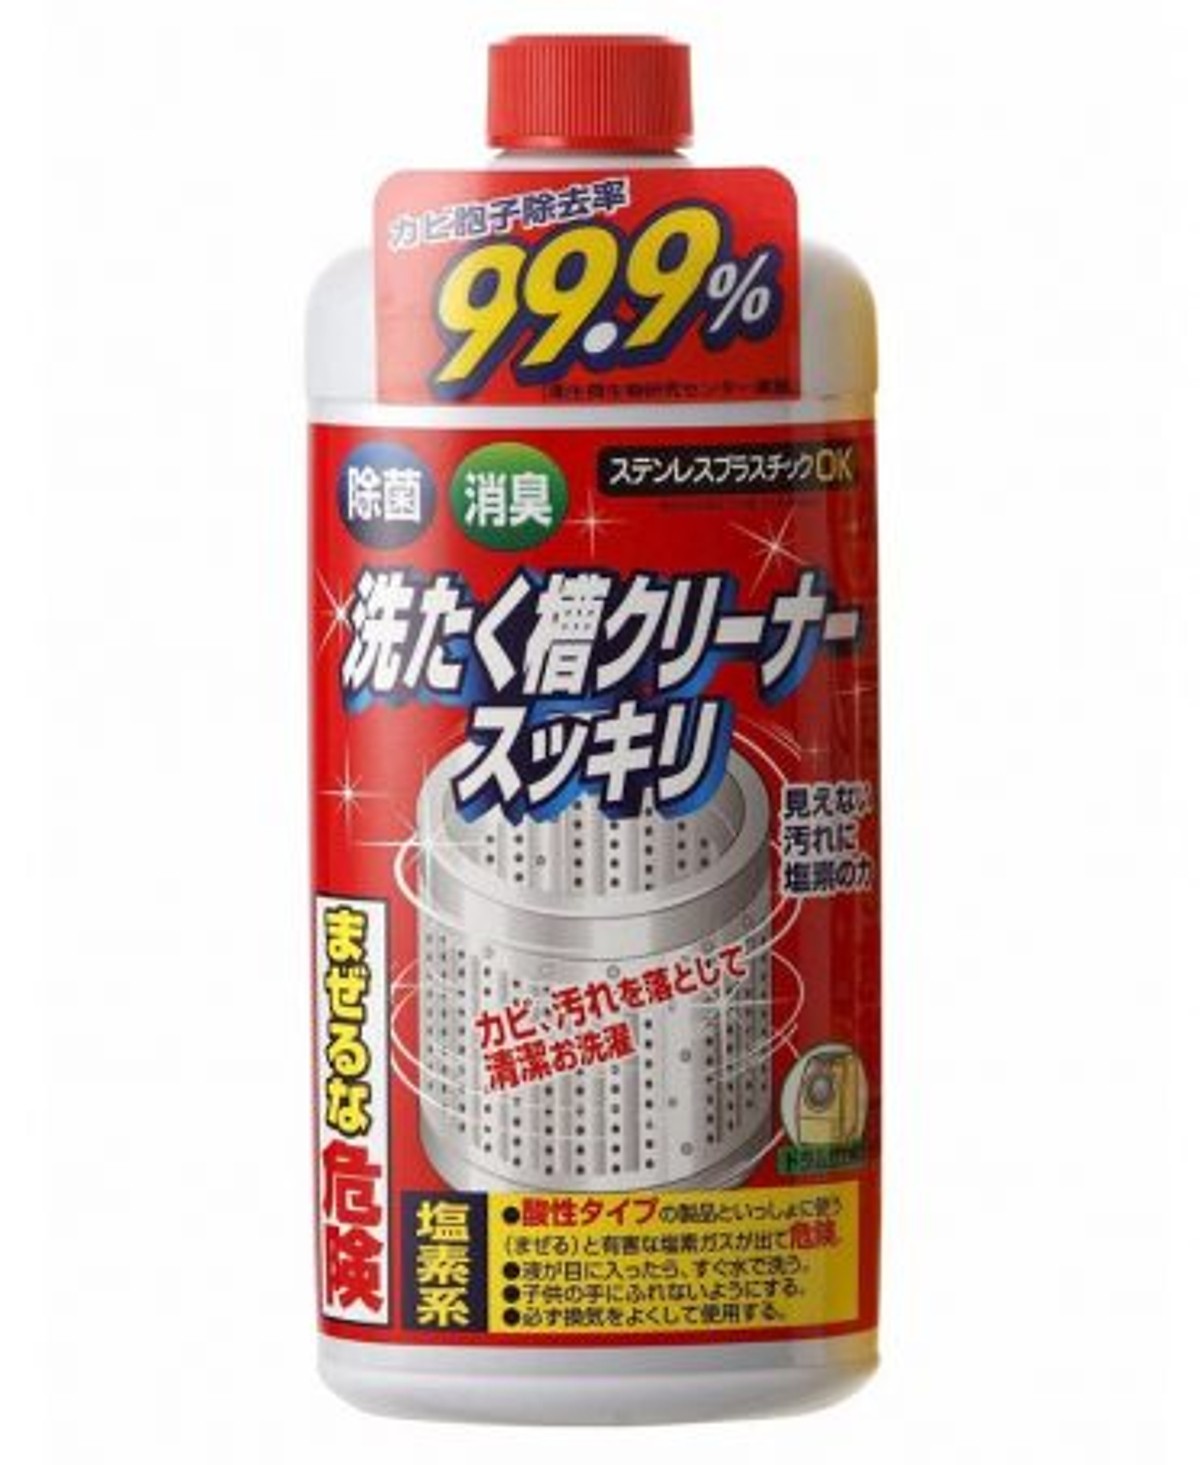 Combo Nước tẩy vệ sinh lồng máy giặt Rocket + Hộp khử mùi ngăn tủ bếp hương trà xanh nội địa Nhật Bản